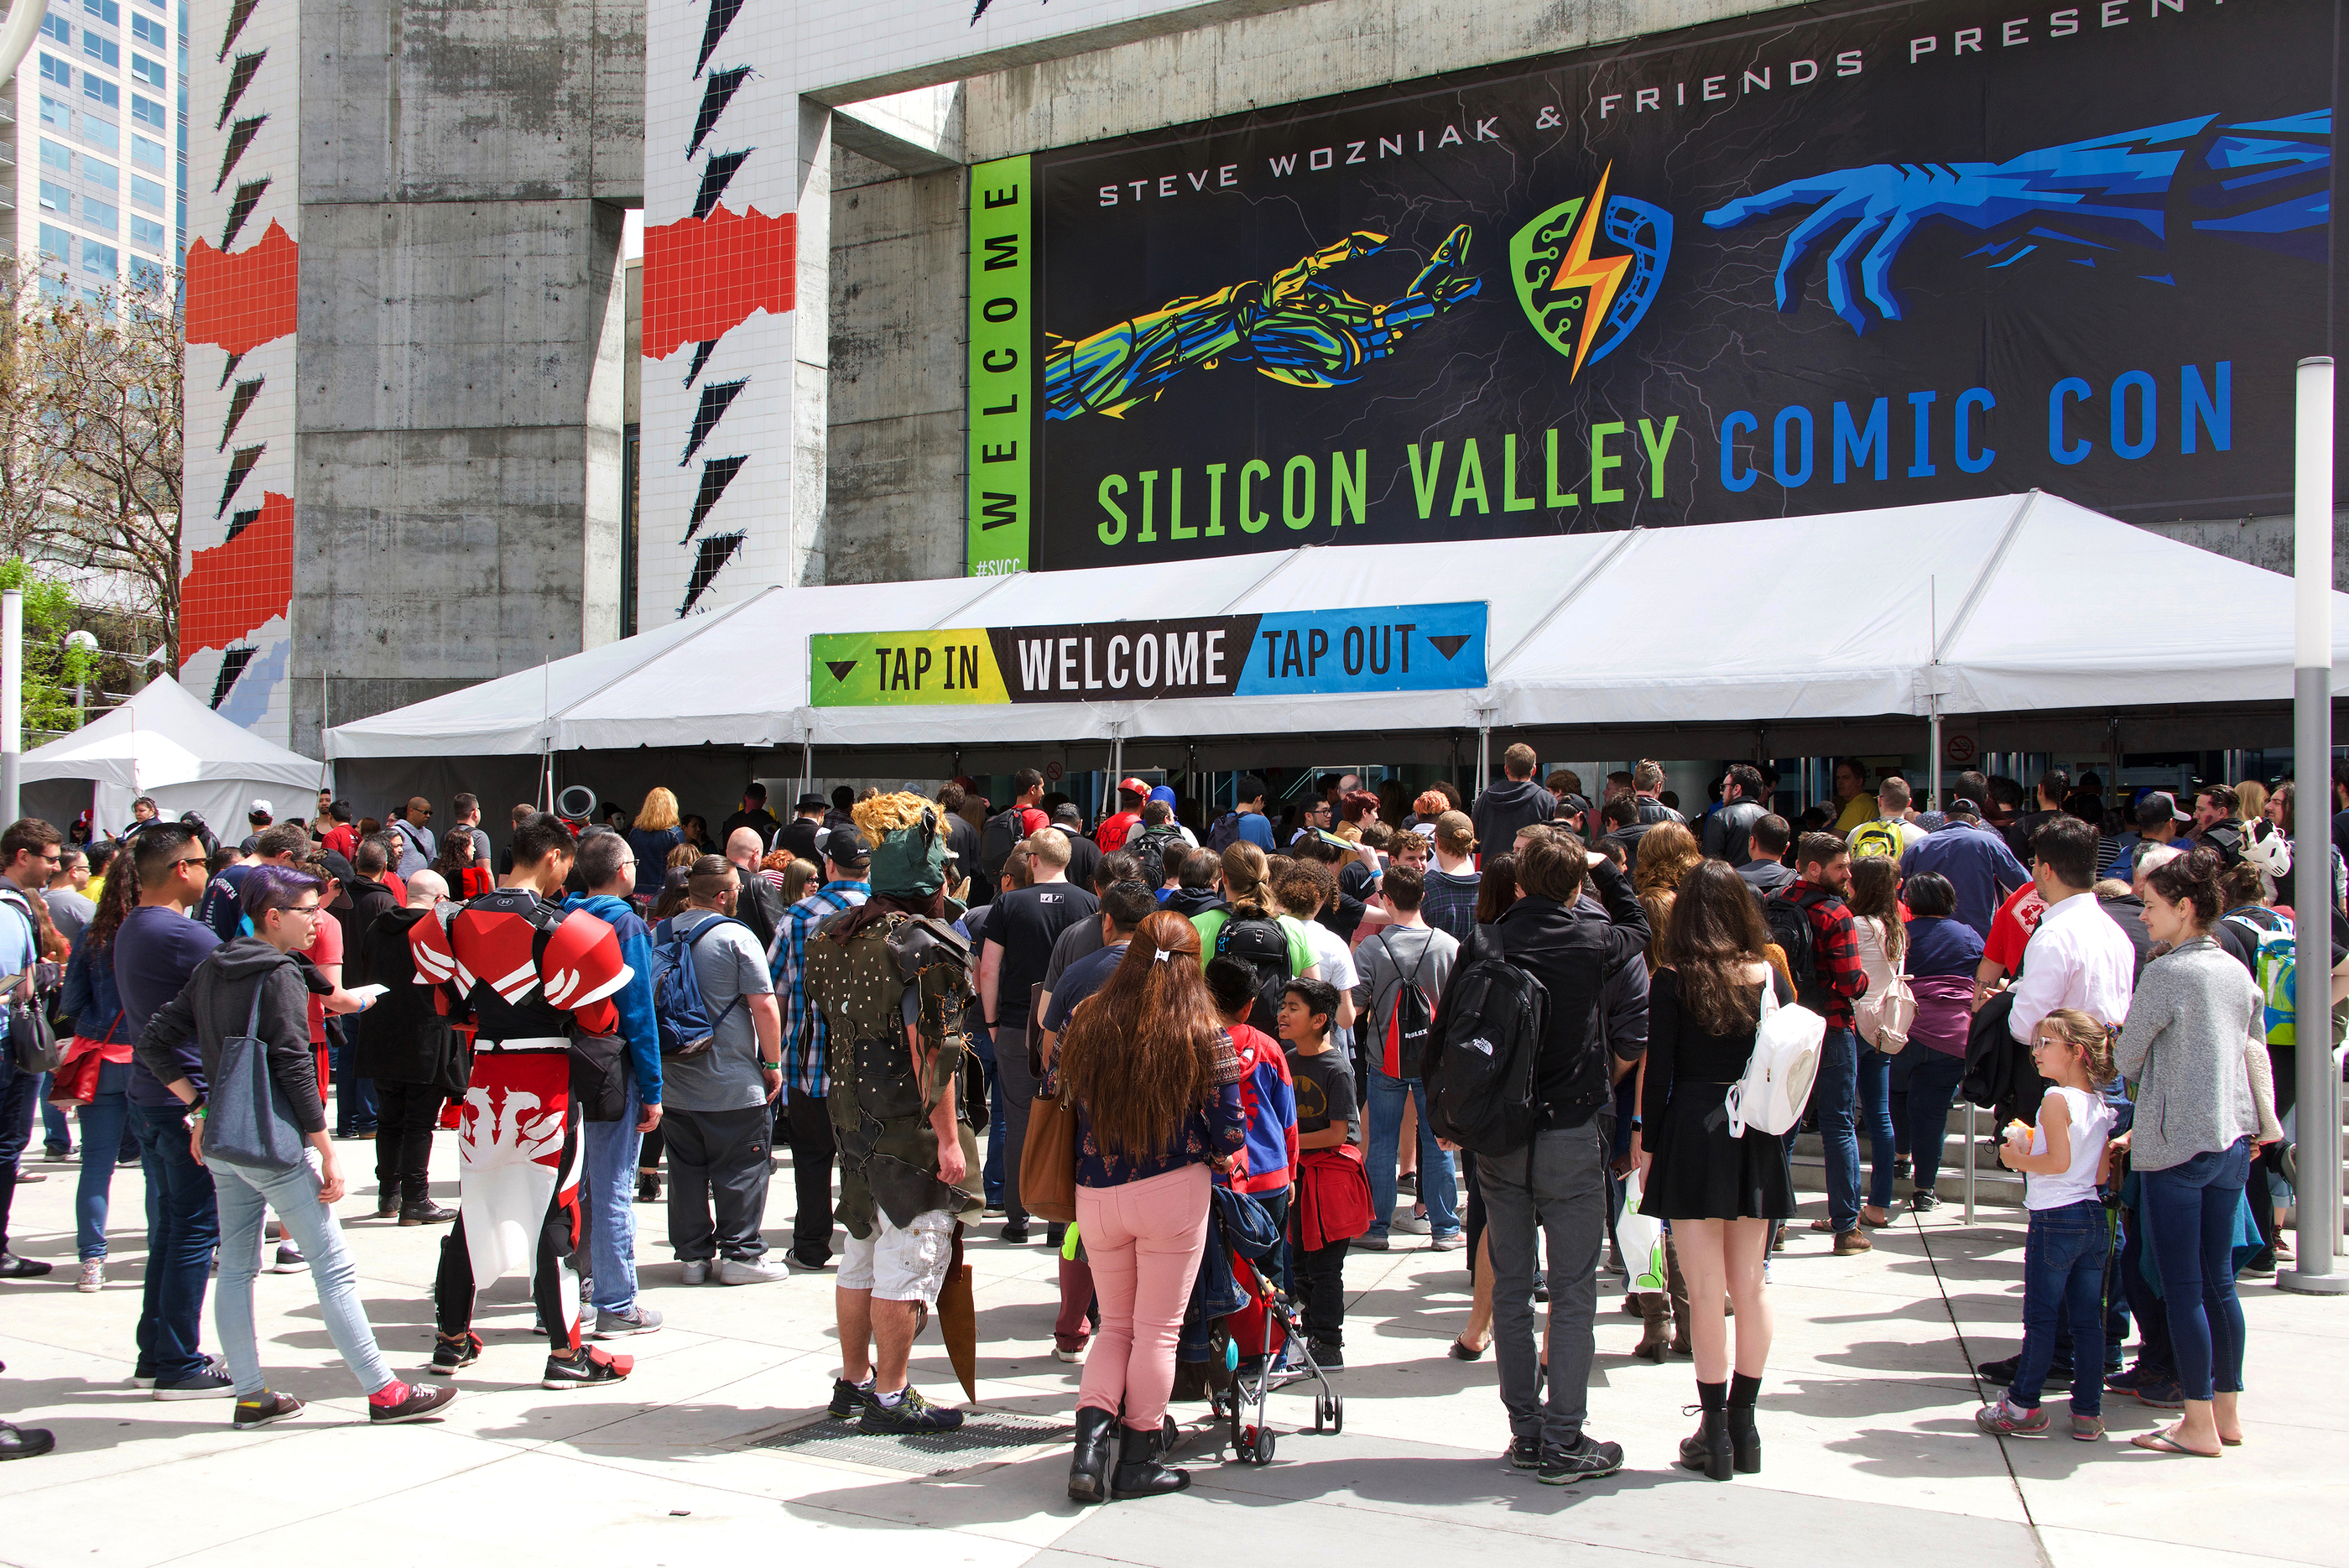 Technossus at Comic-Con: A Sea of Fun-loving, Nerdy Humanity